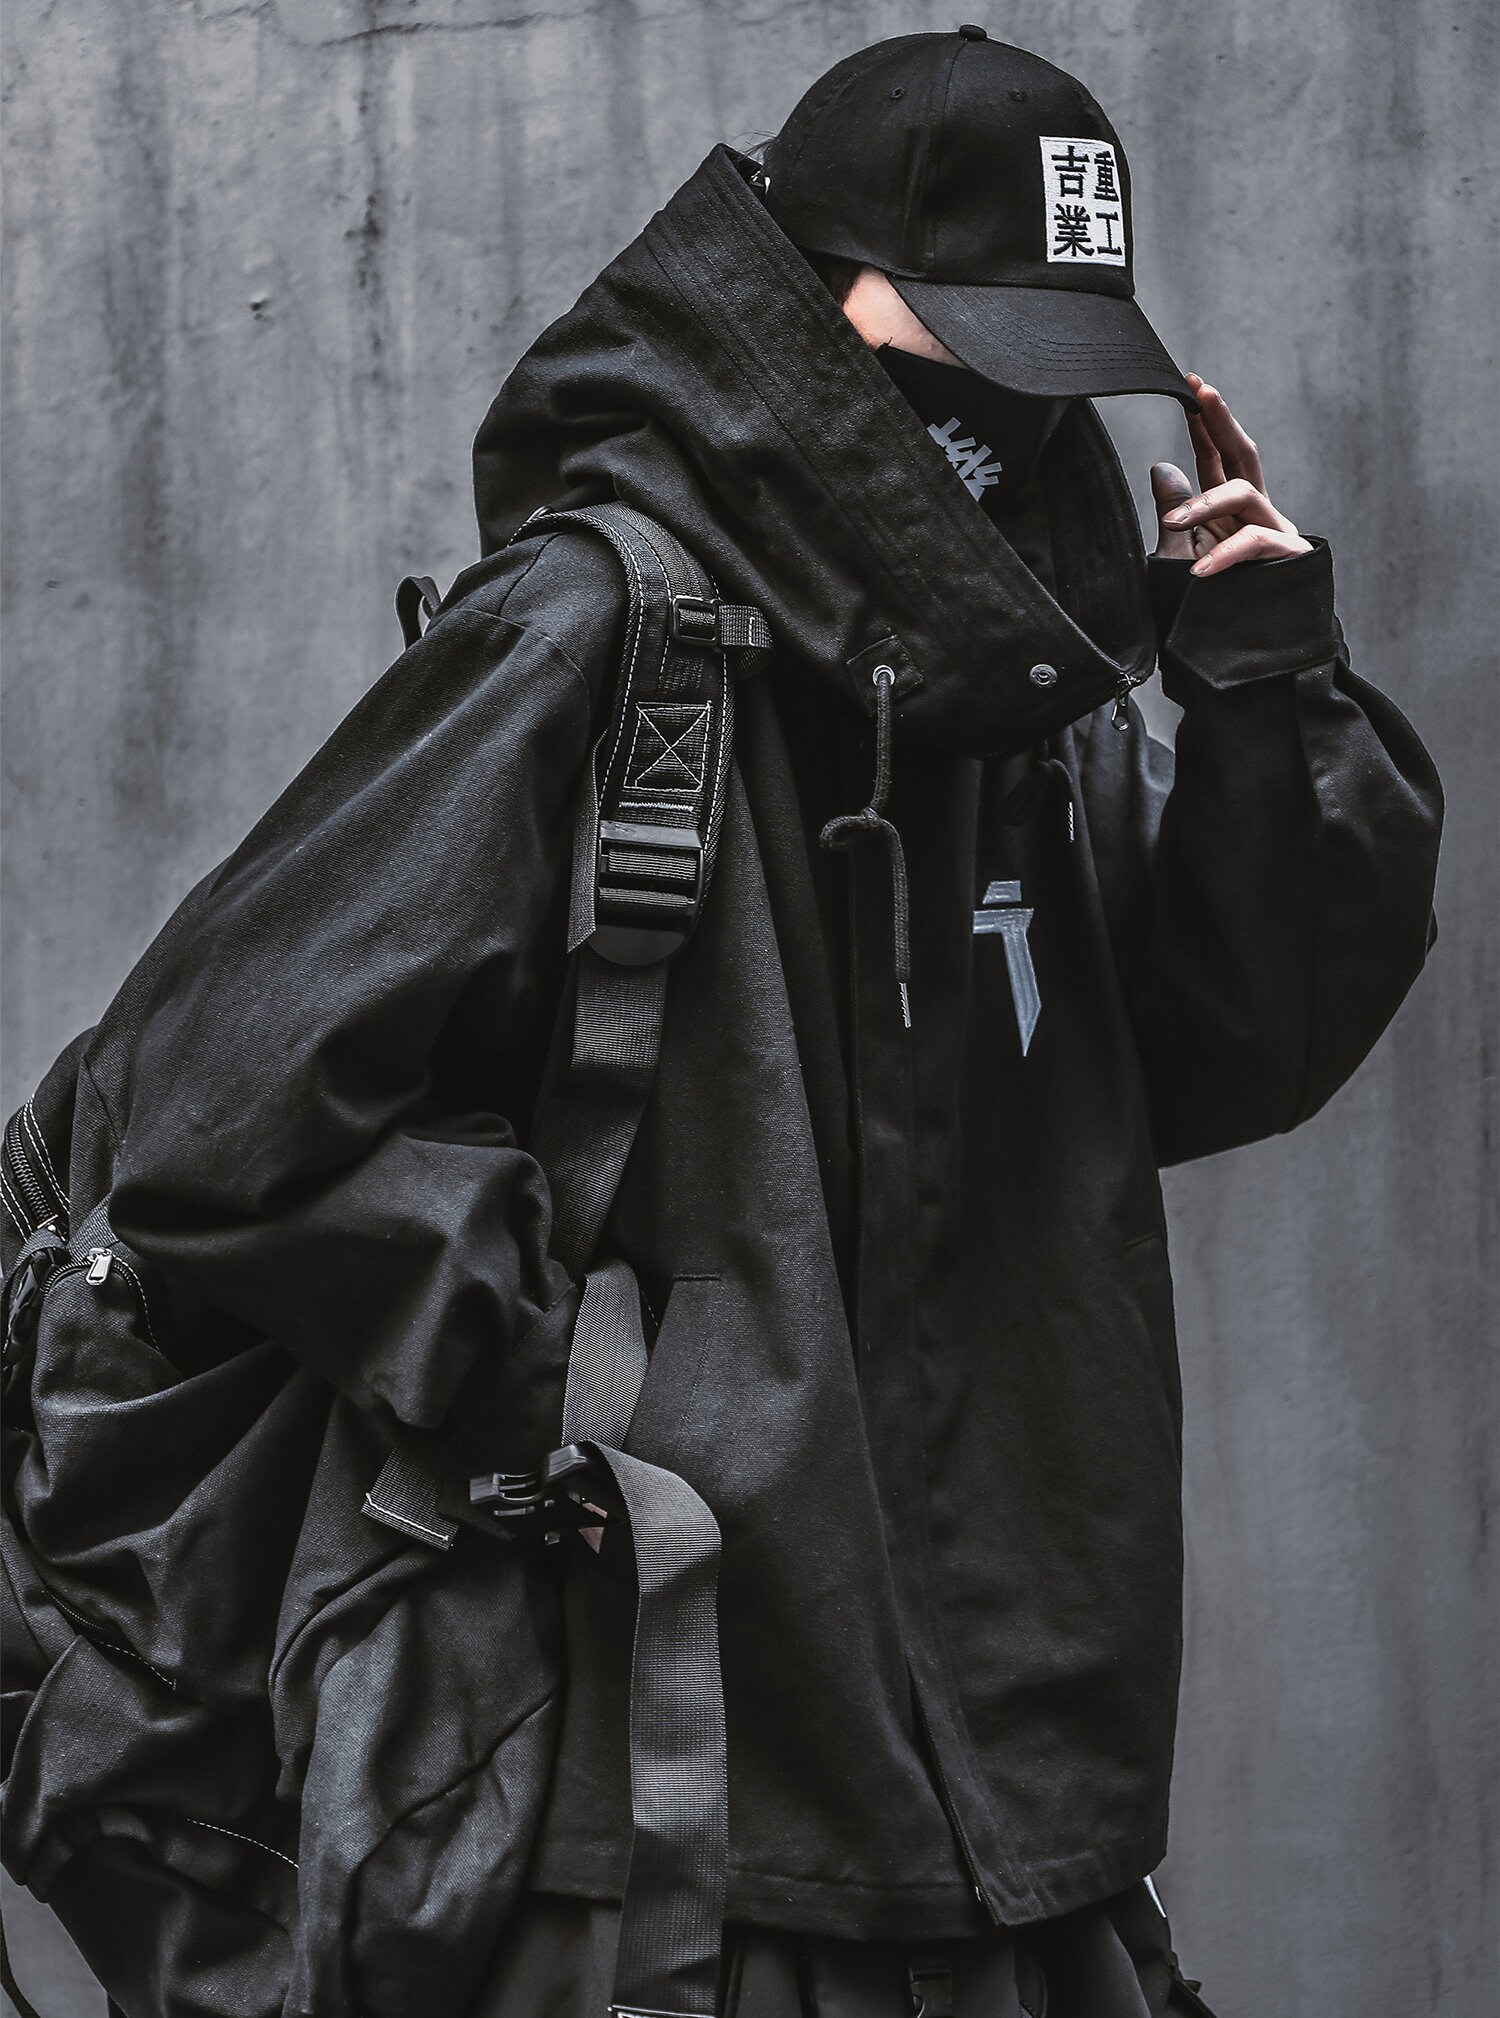 Men's Techwear I-tech Black Jacket Coat for Men Streetwear - Etsy